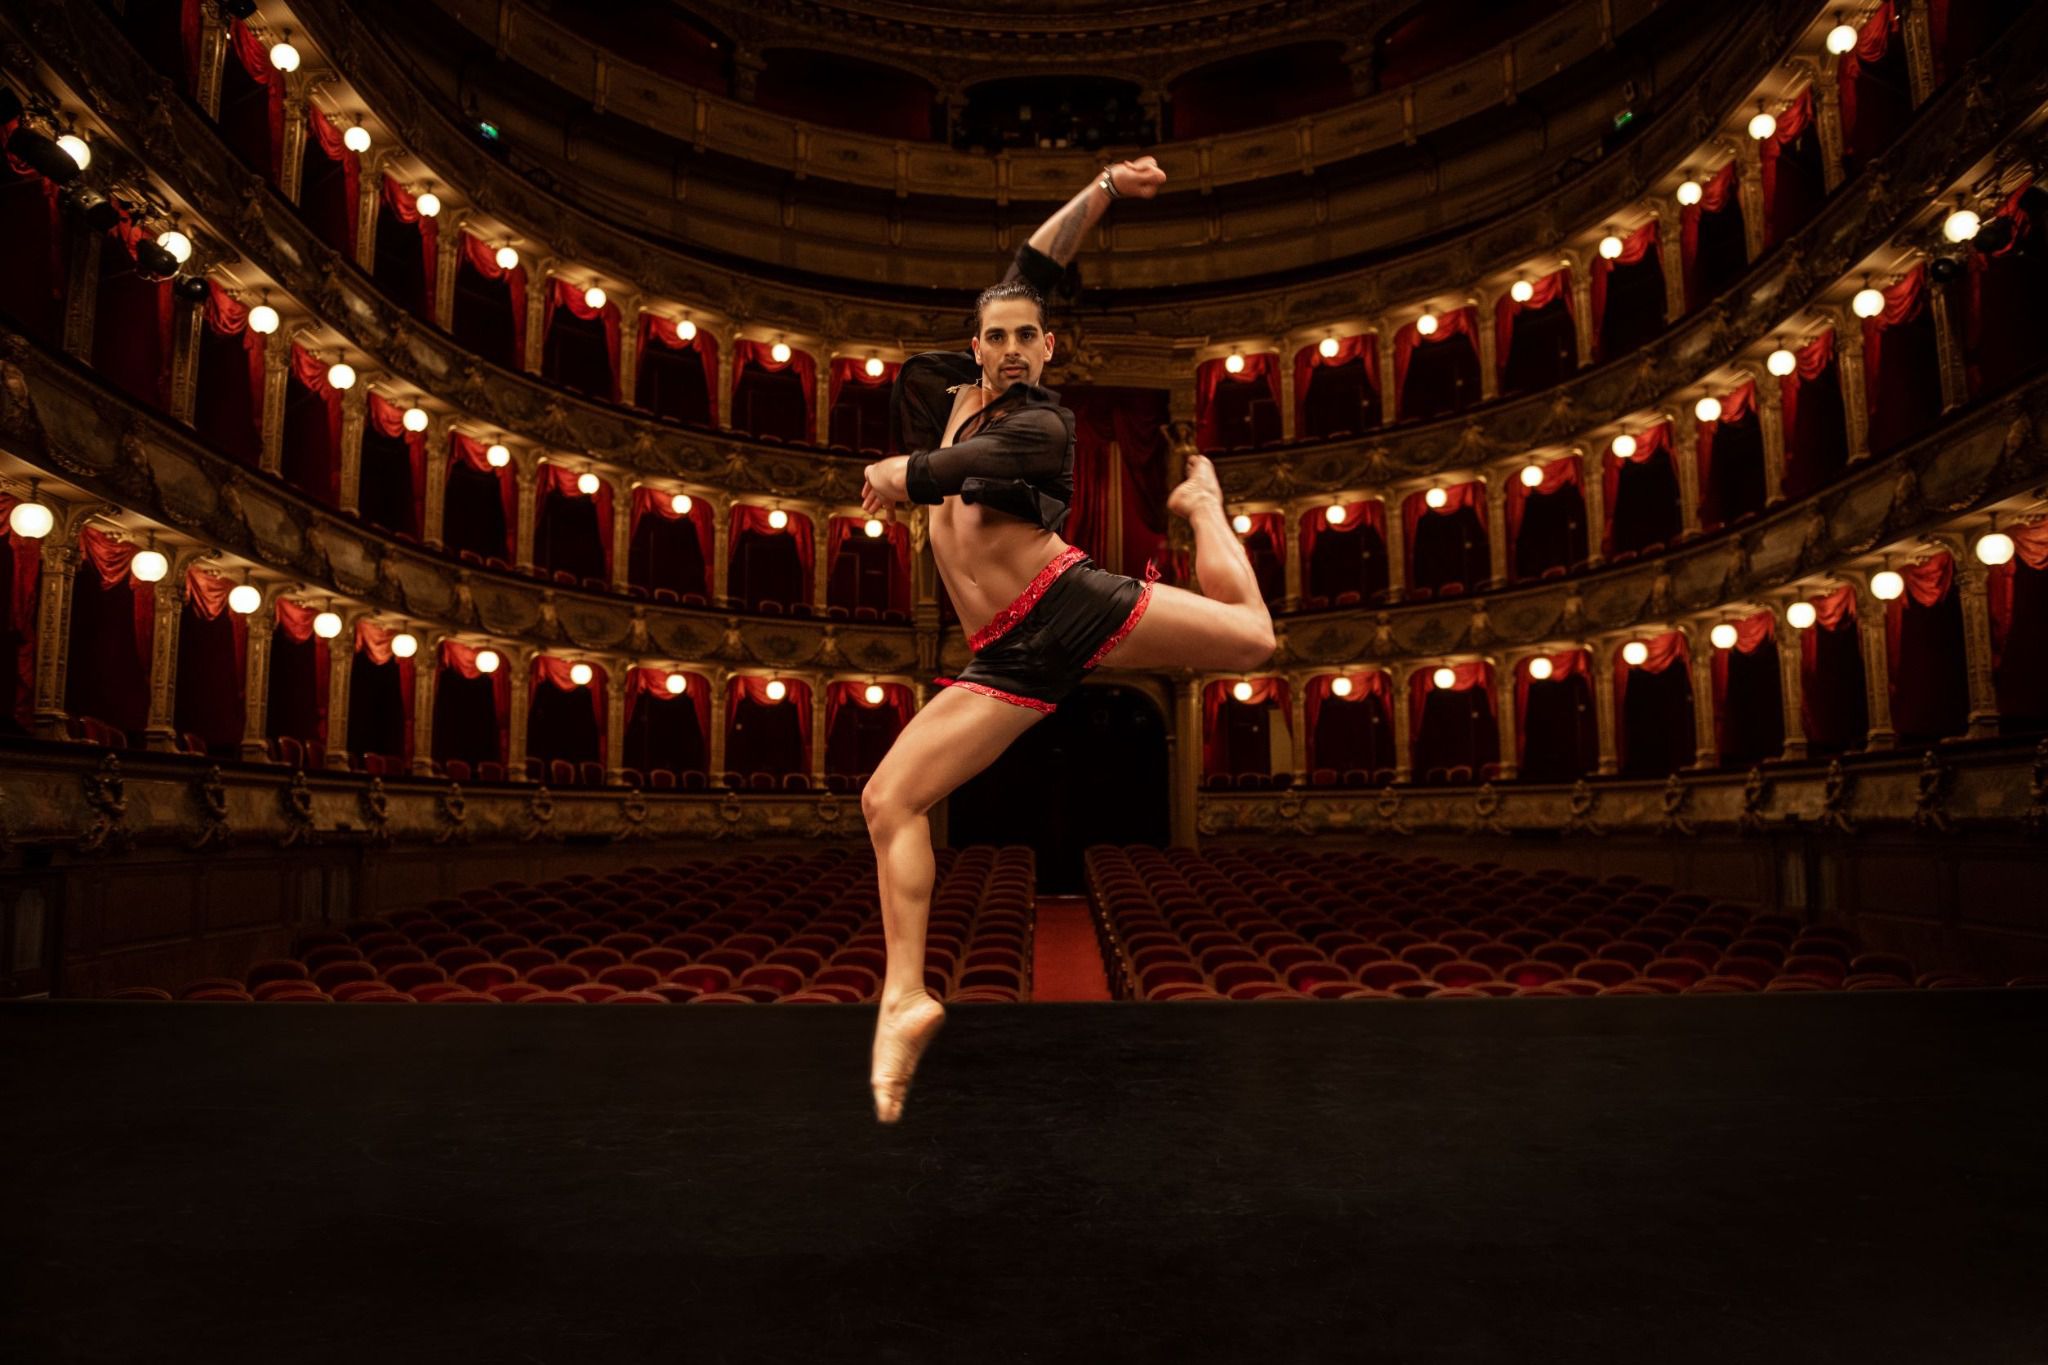 Modèle en position de danse sur une scène de théâtre, vêtu du boxer "California Love" By Radouane, alliant l'athlétisme à l'élégance de la soie noire et au motif bandana rouge.